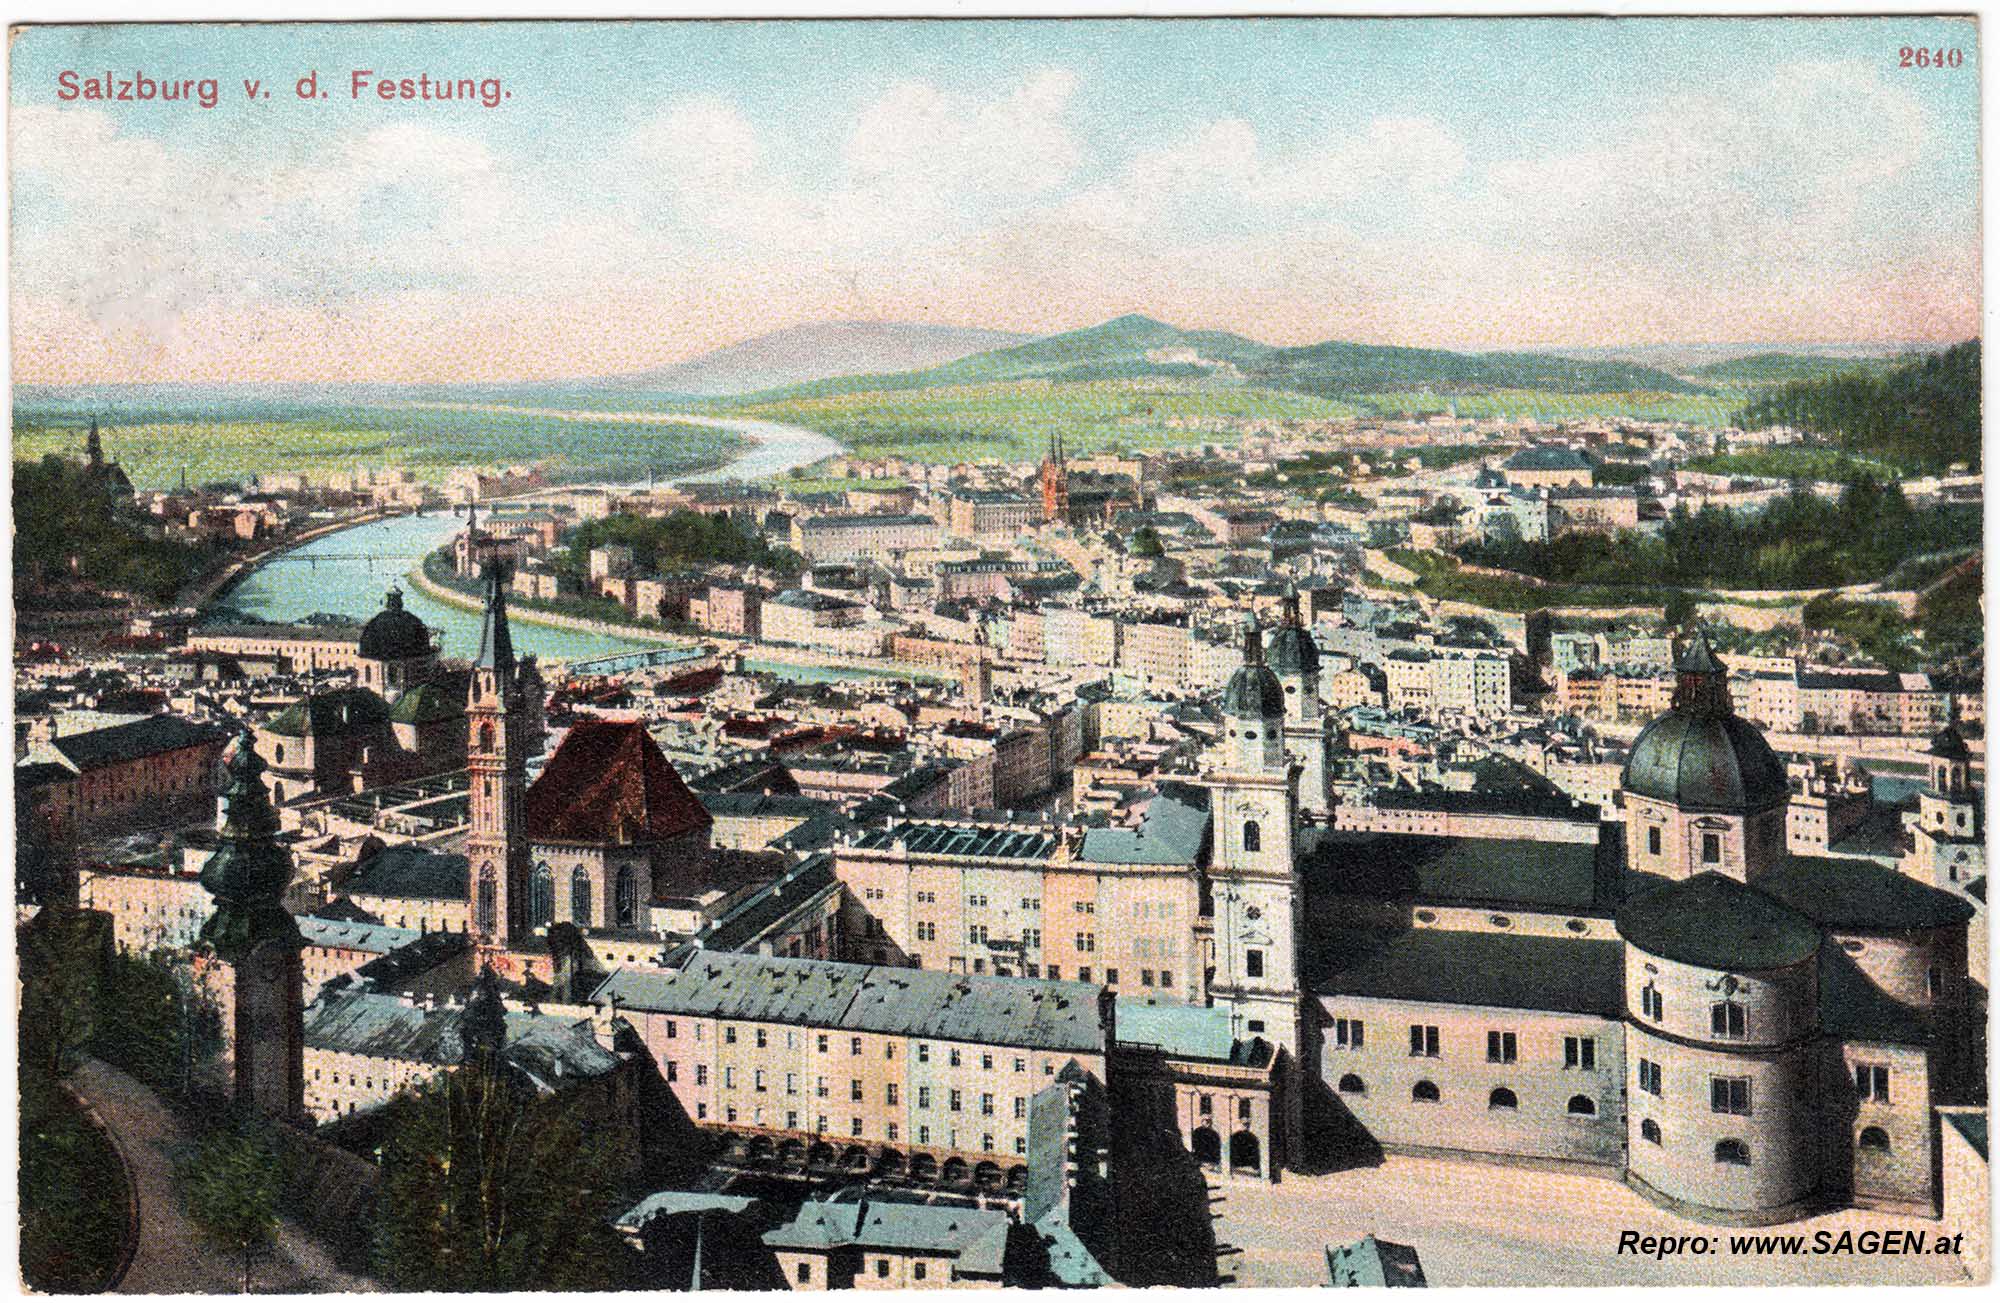 Salzburg v. d. Festung